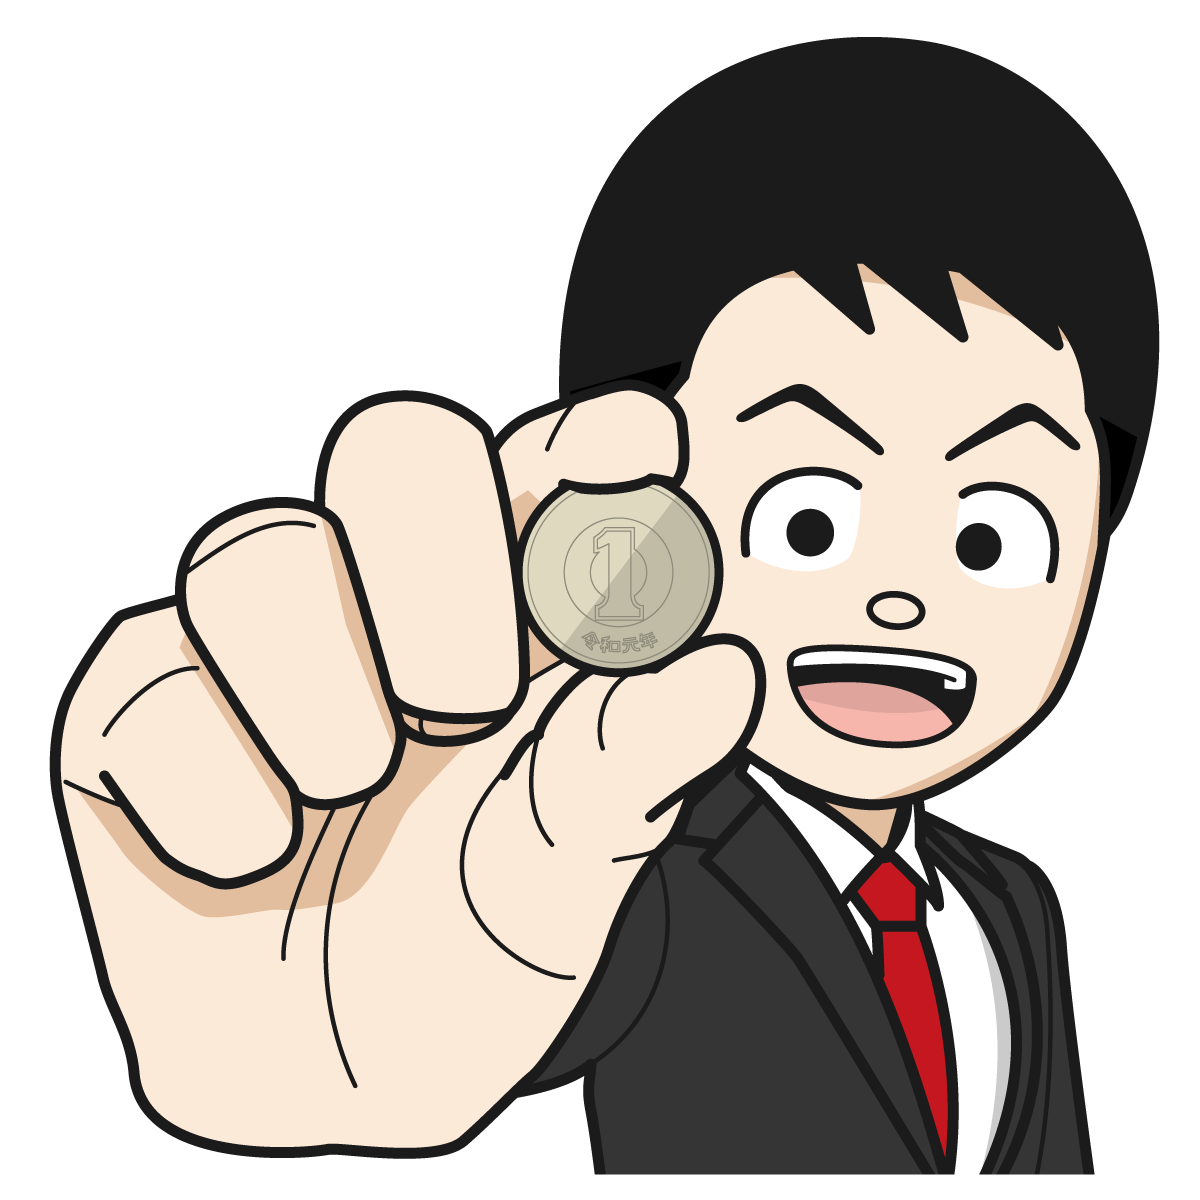 1円を持つサラリーマン 銀行員 公務員 男 Item 18 イラスト Mido Kichi